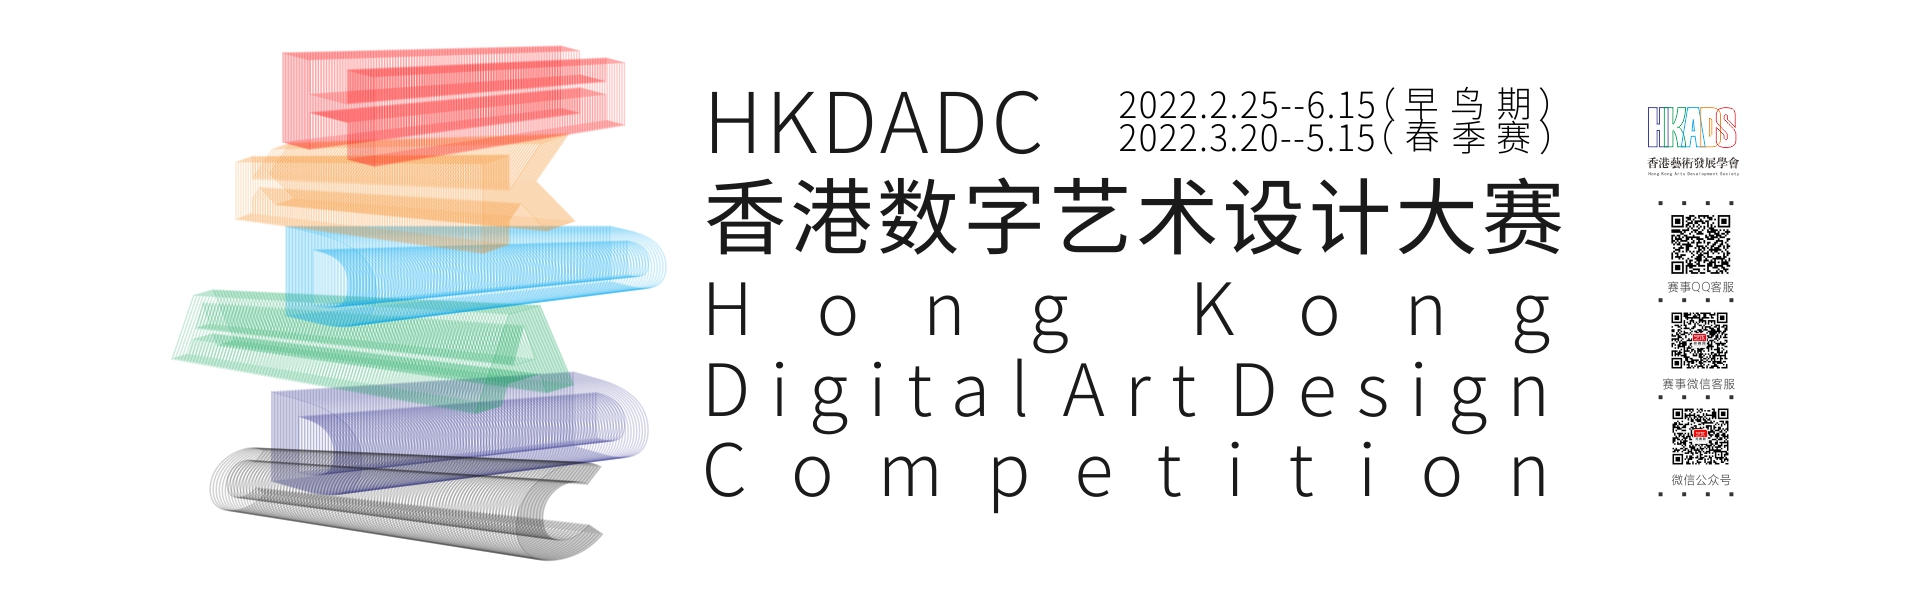 HKDADC--赛事海报5.jpg